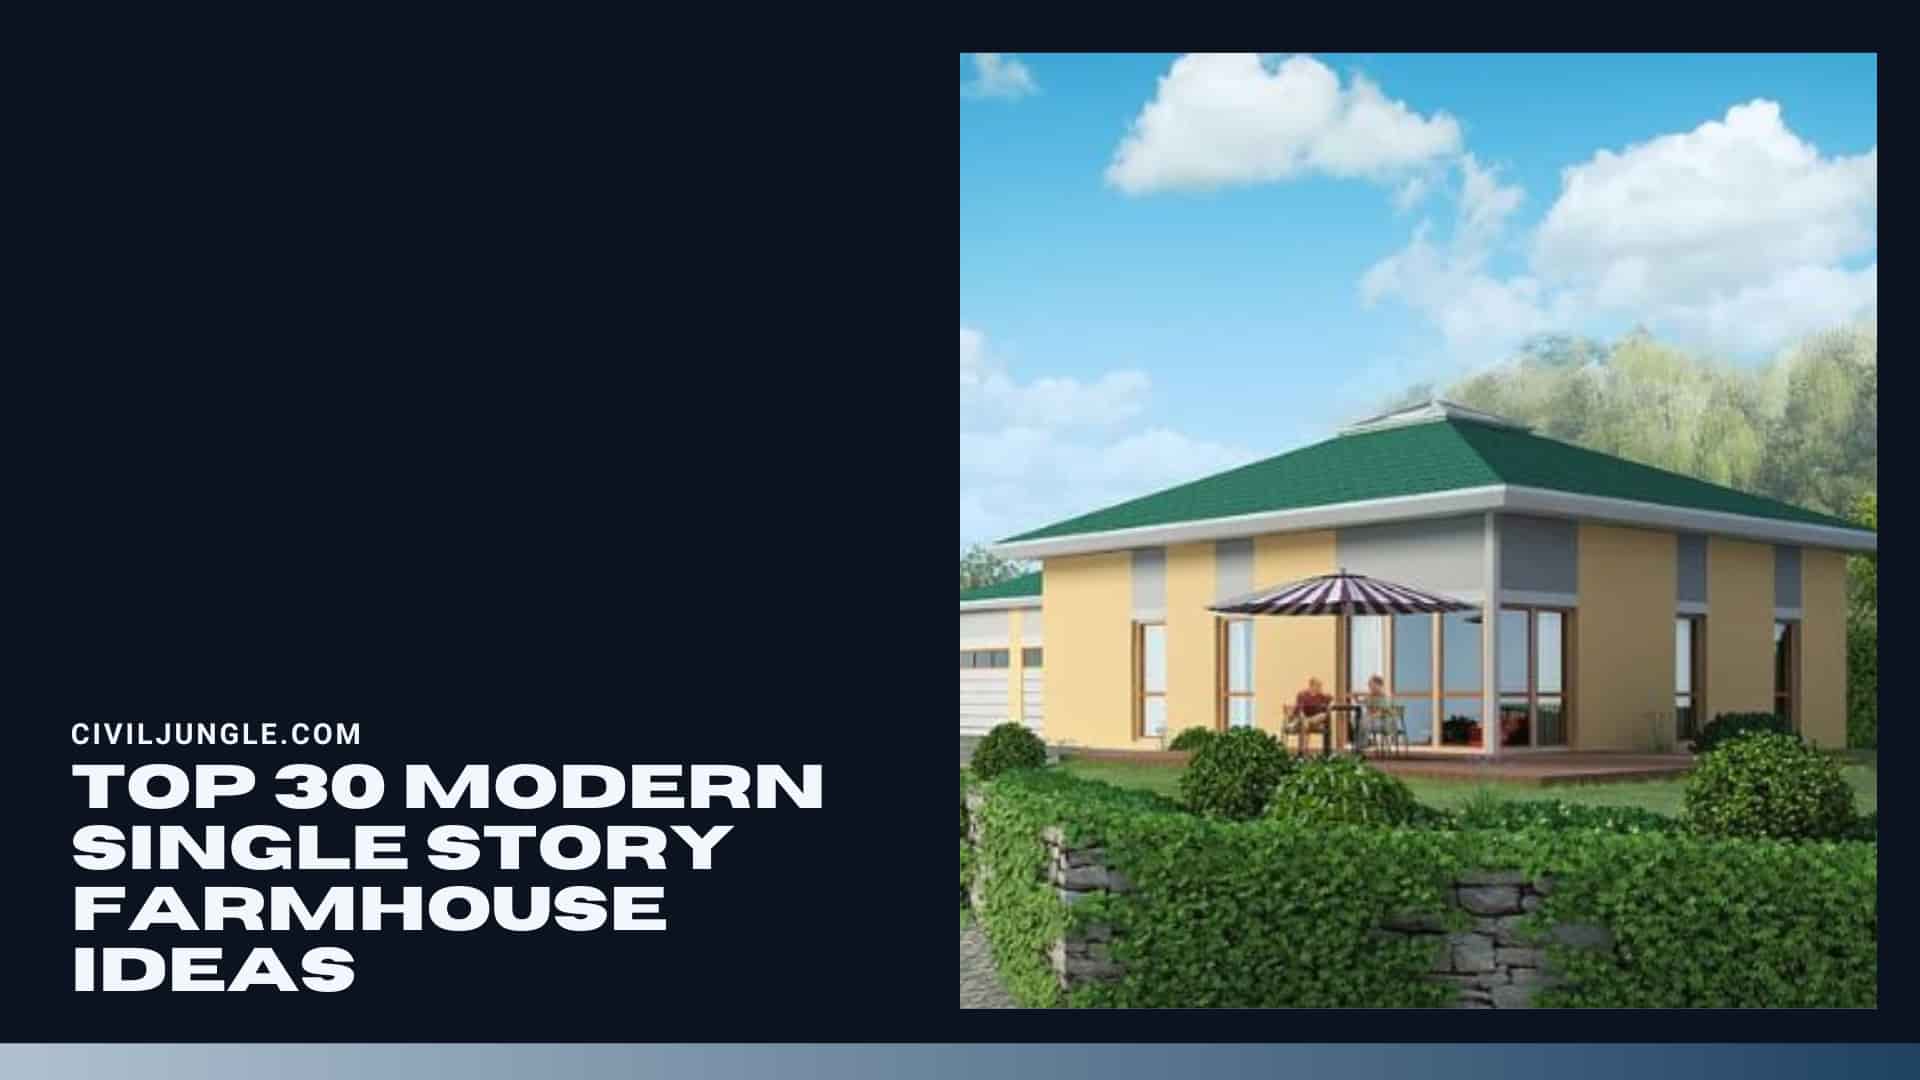 Top 30 Modern Single Story Farmhouse Ideas